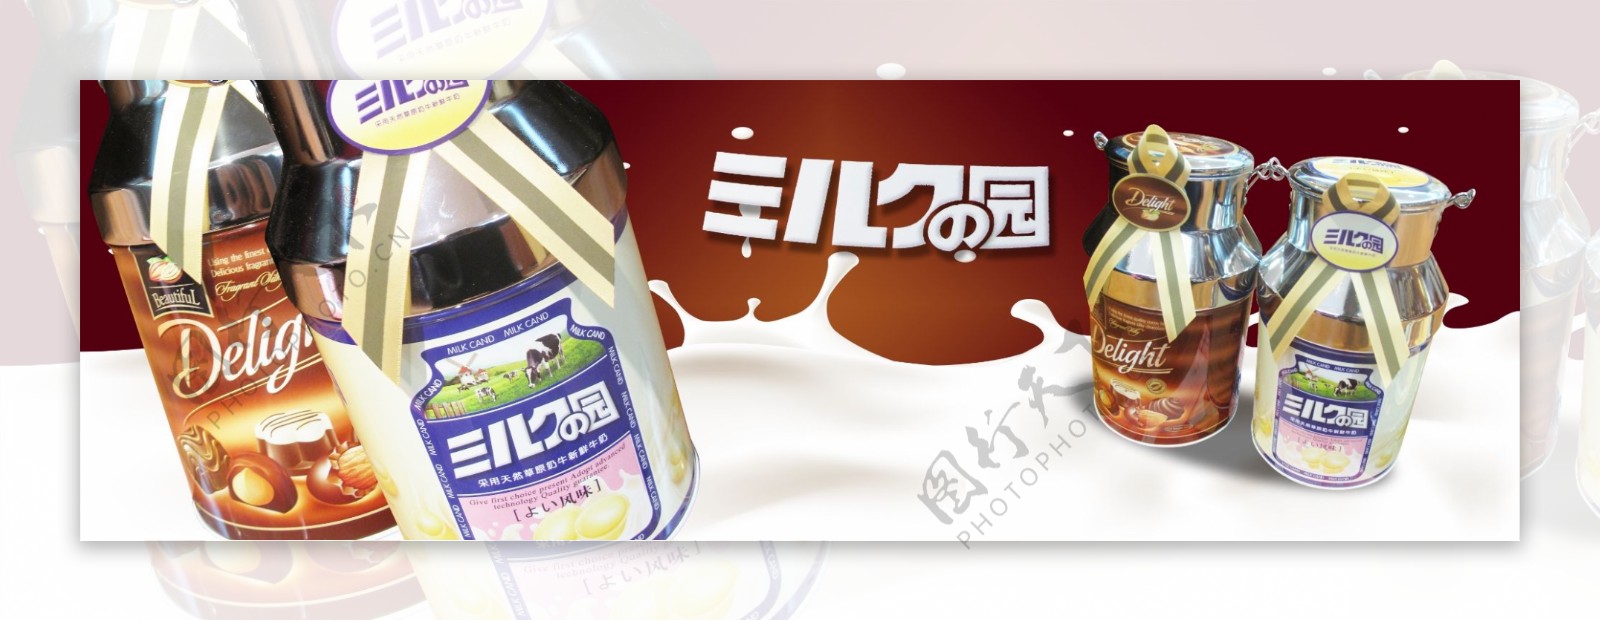 日本进口食品巧克力铁罐灯箱海报